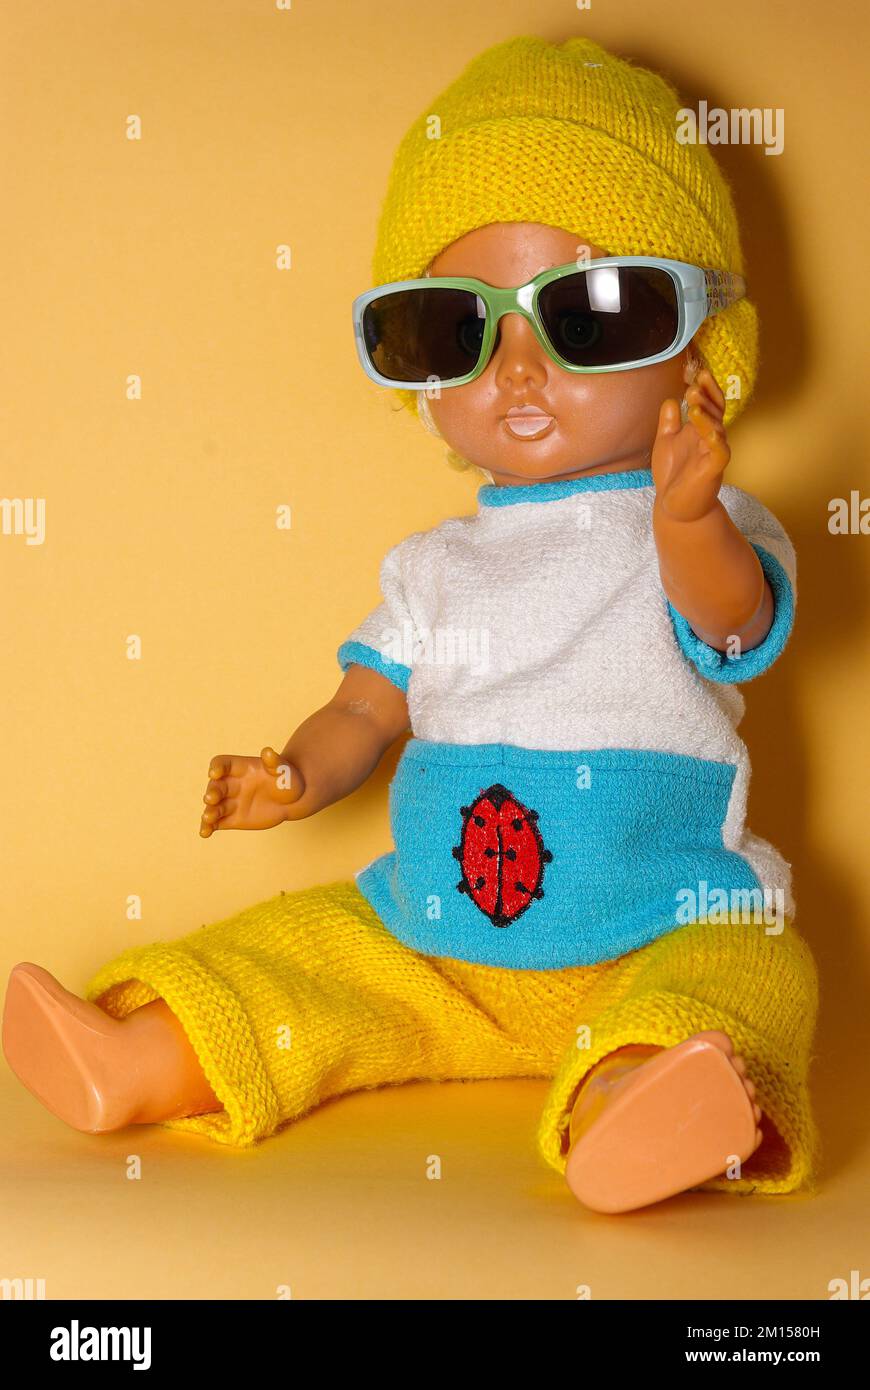 Schicke Puppe mit Sonnenbrille und gelber Strickmütze, Kinderspielzeug aus der DDR der 1970er, Konzept des kindlichen Spielens und des menschlichen Ausdrucks. Stockfoto